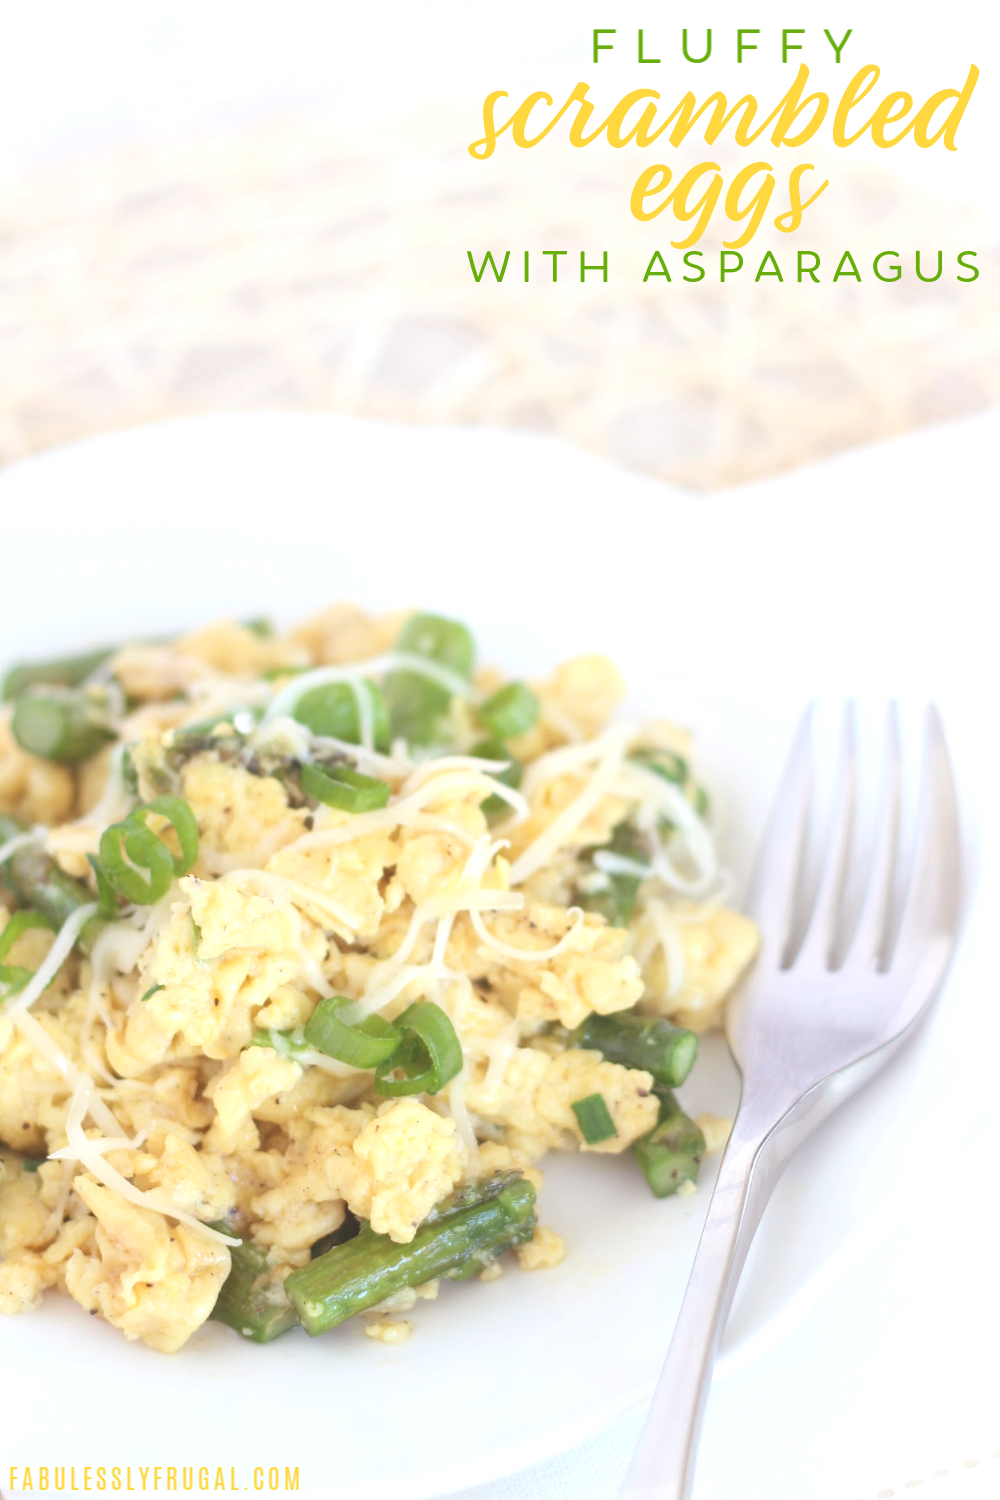 Fluffy asparagus eggs